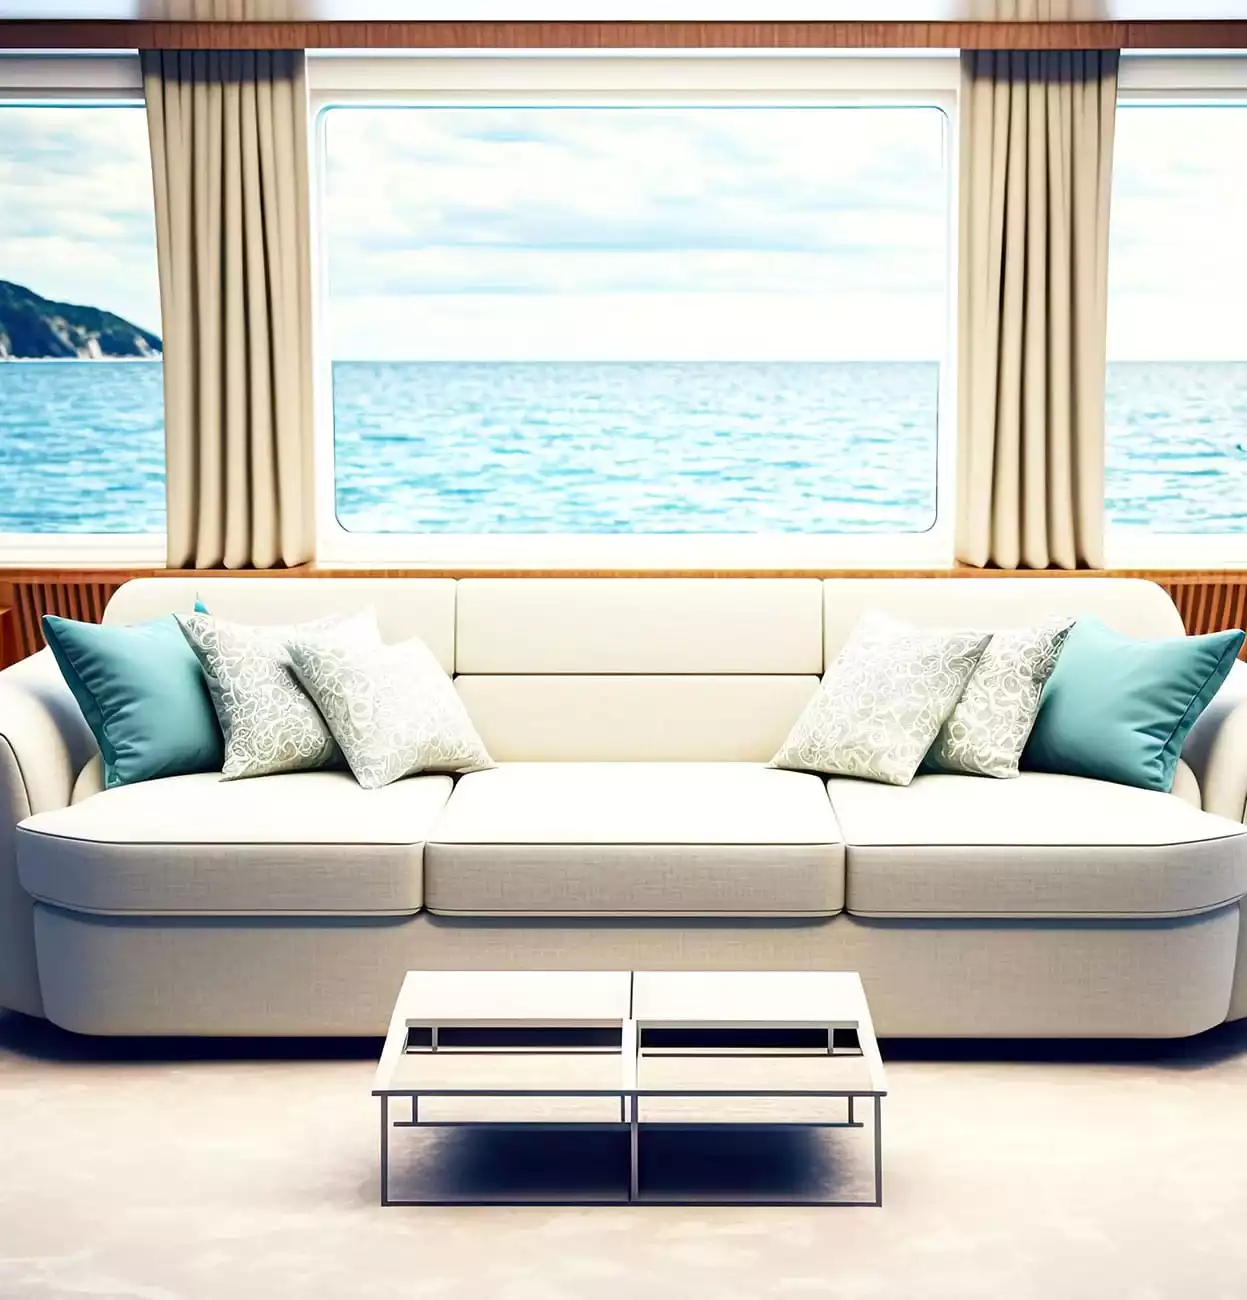 Ζαχαρί καναπές εσωτερικά, μπροστά σε παράθυρο σκάφους.